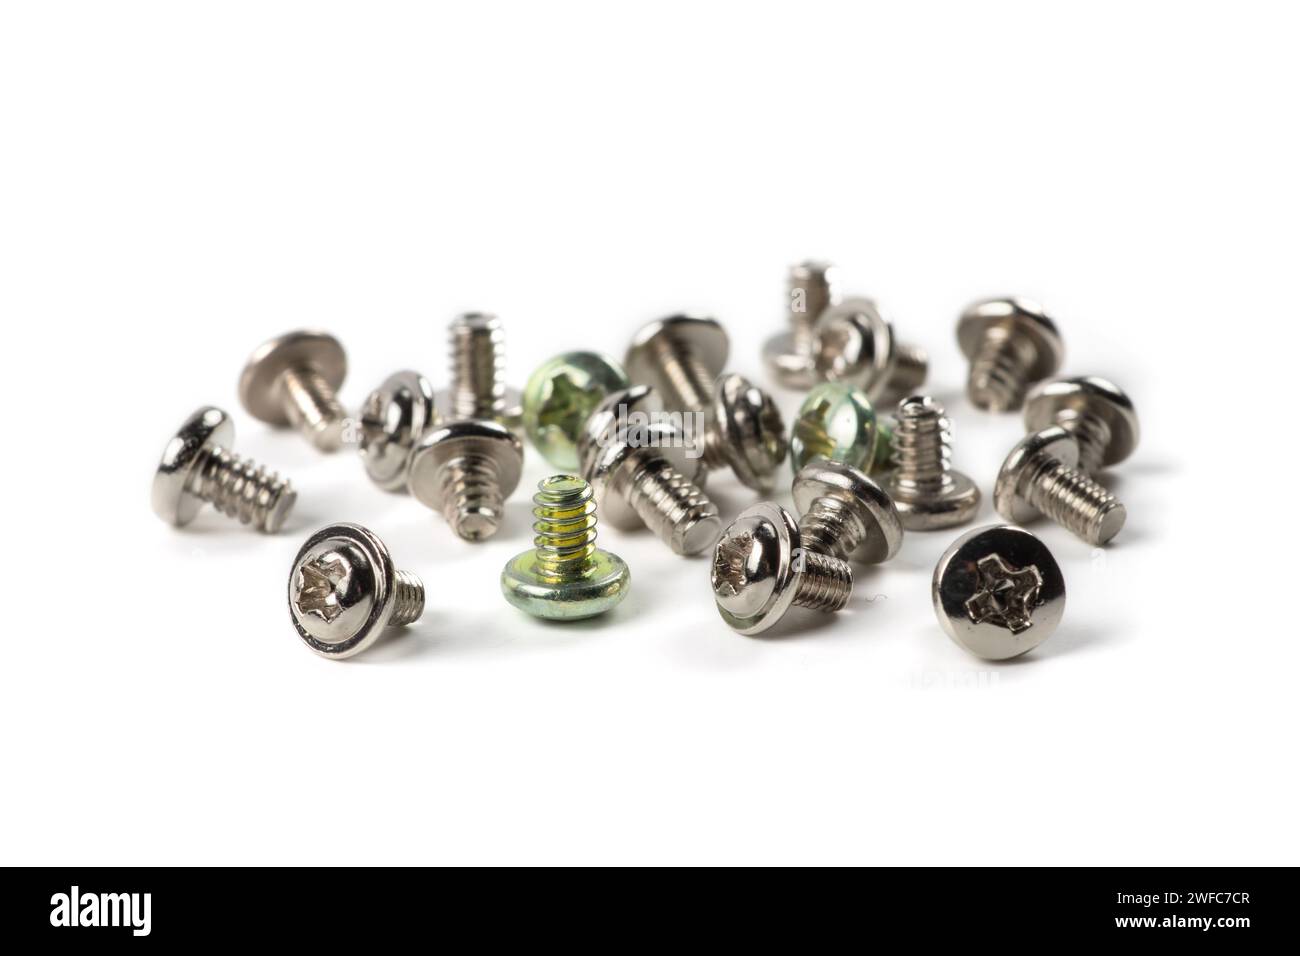 screws macro photo, metal screw, steel screw, repair screw. Stock Photo